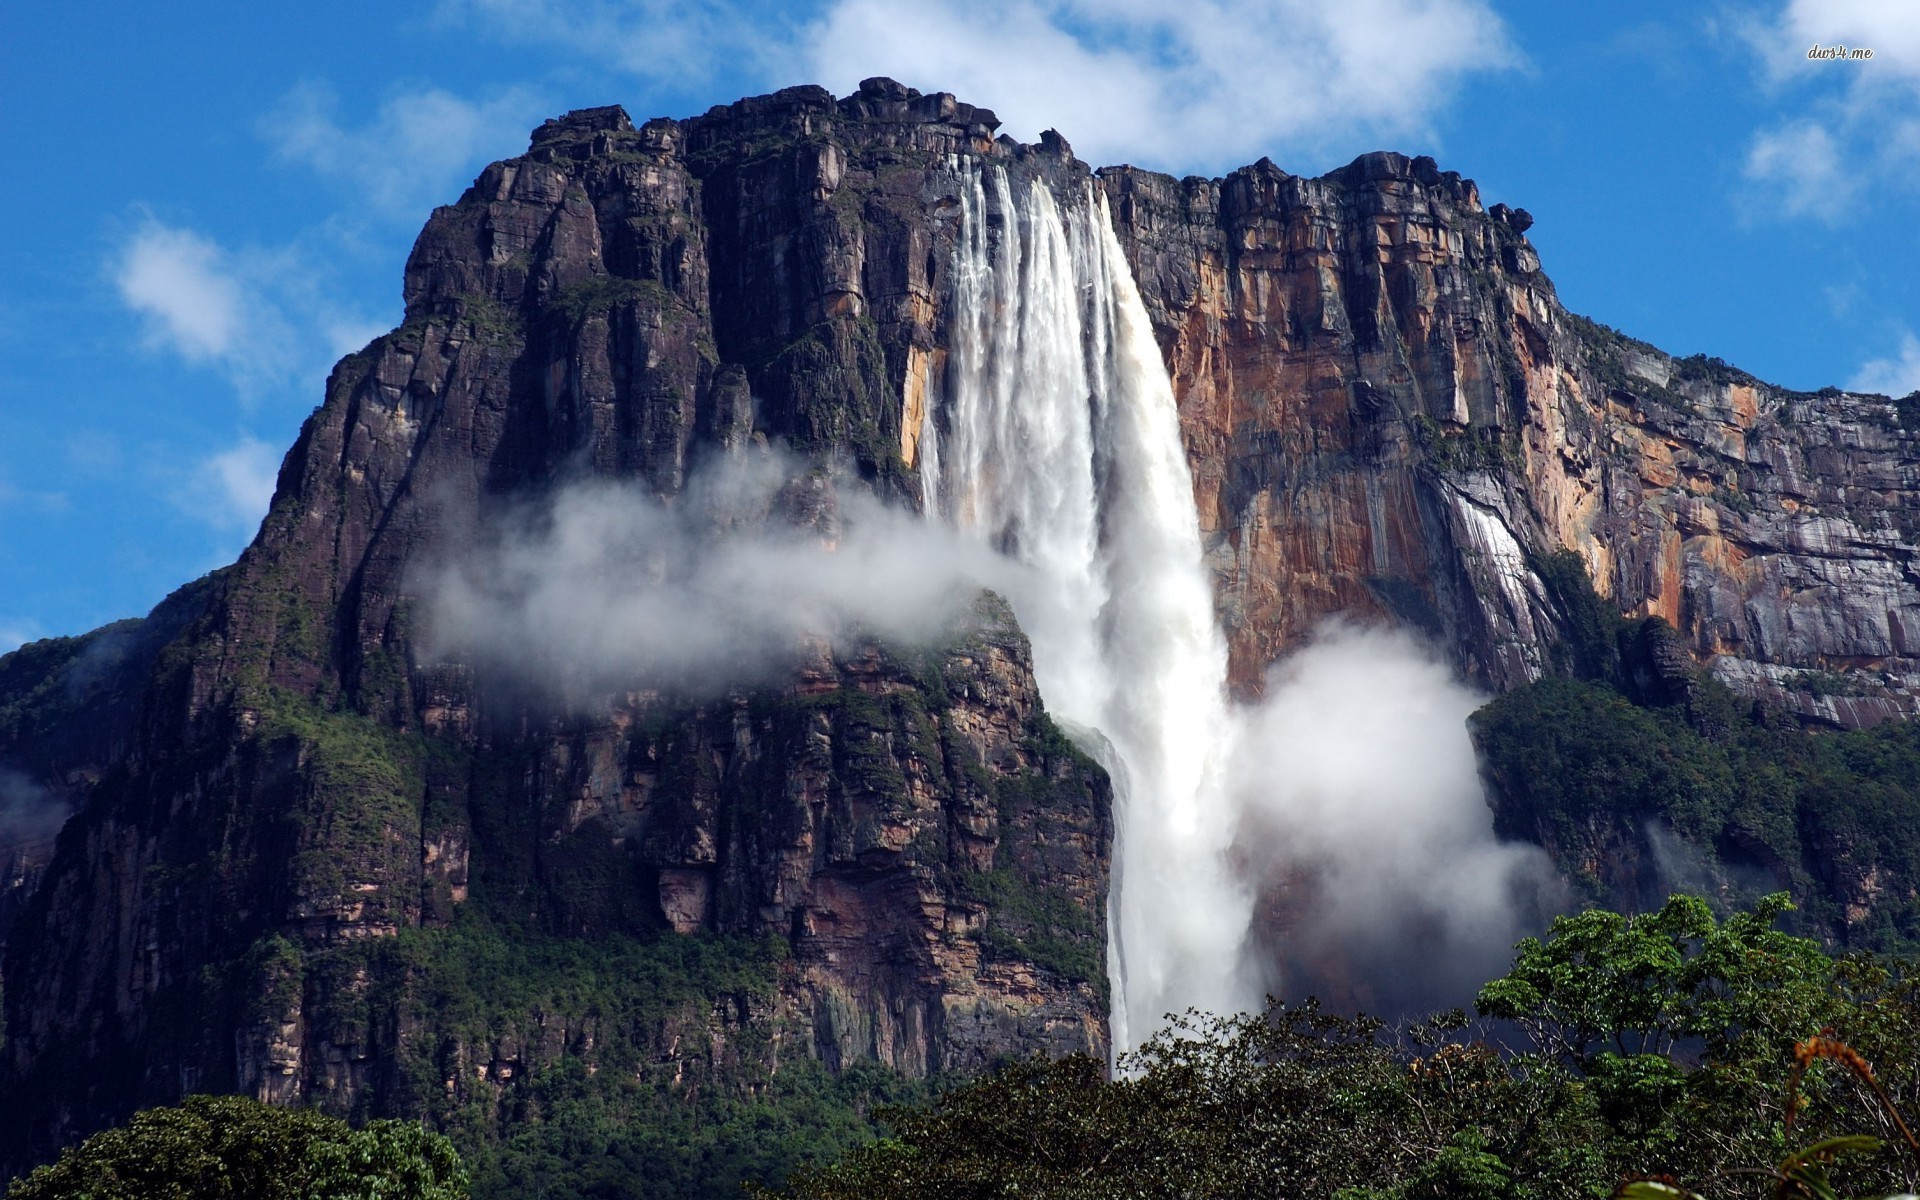  آبشارهای انجل، بلندترین آبشار پیوسته و یکپارچه دنیا